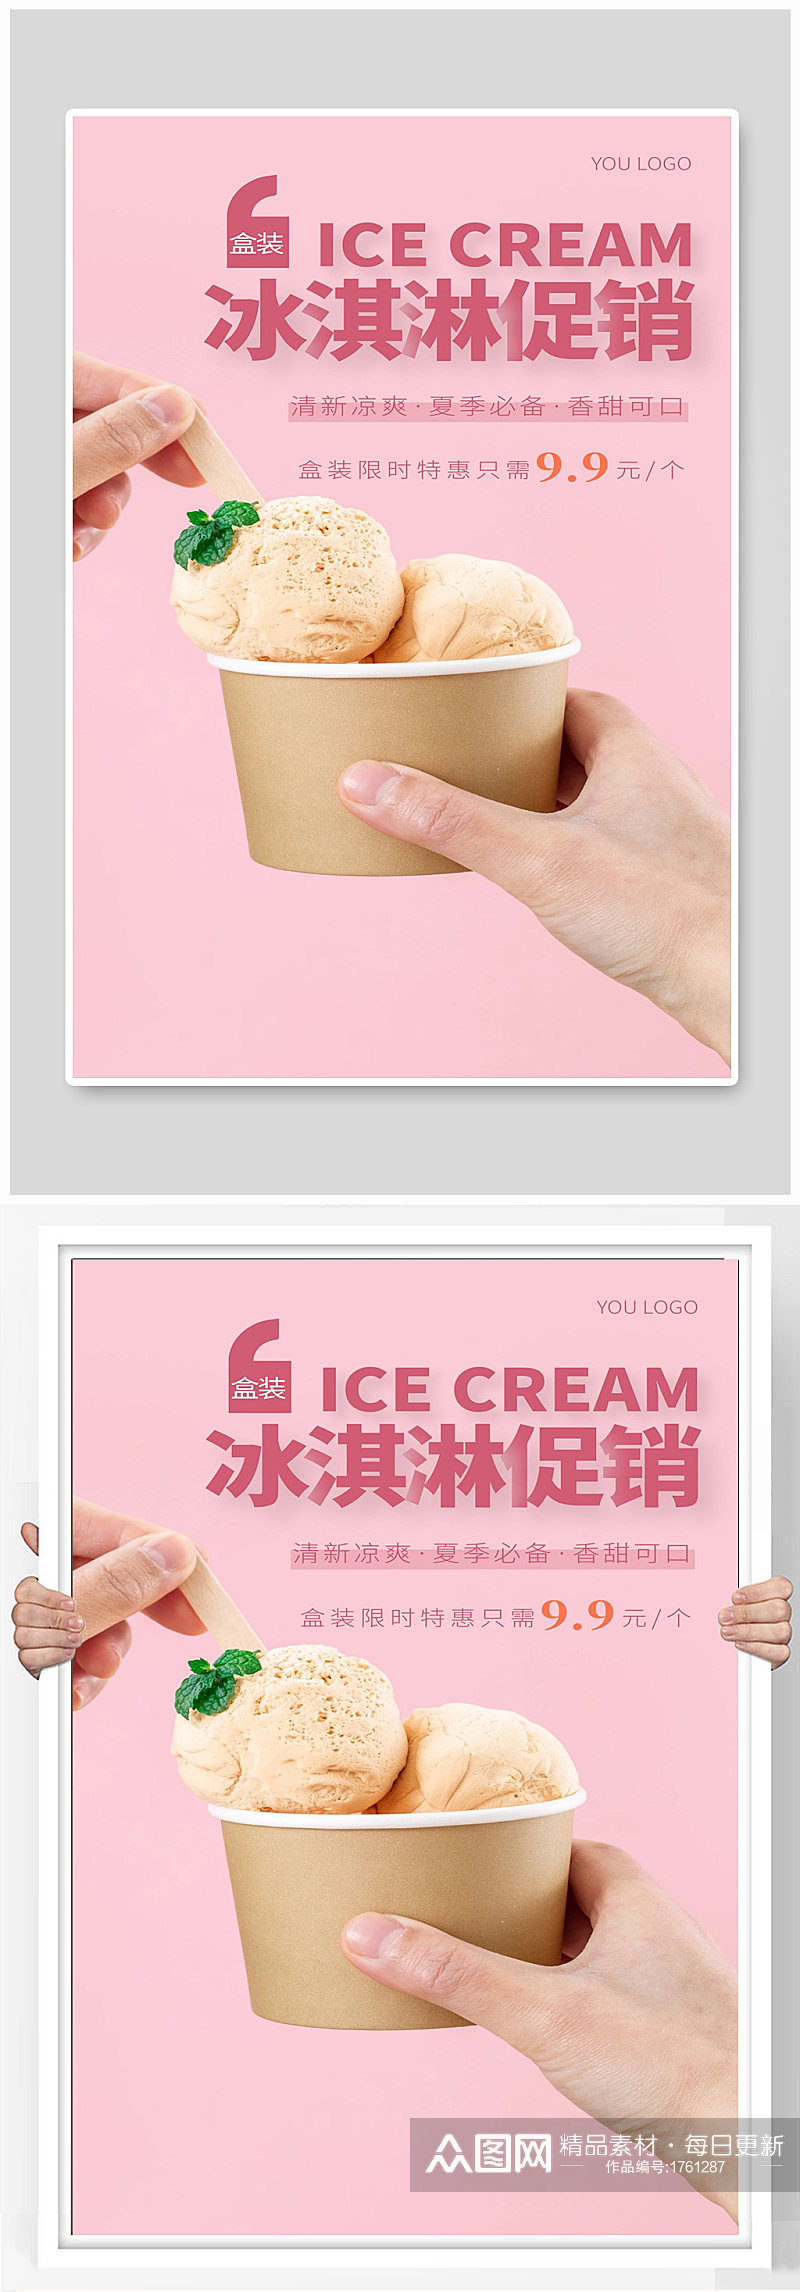 冰淇淋促销宣传海报设计素材